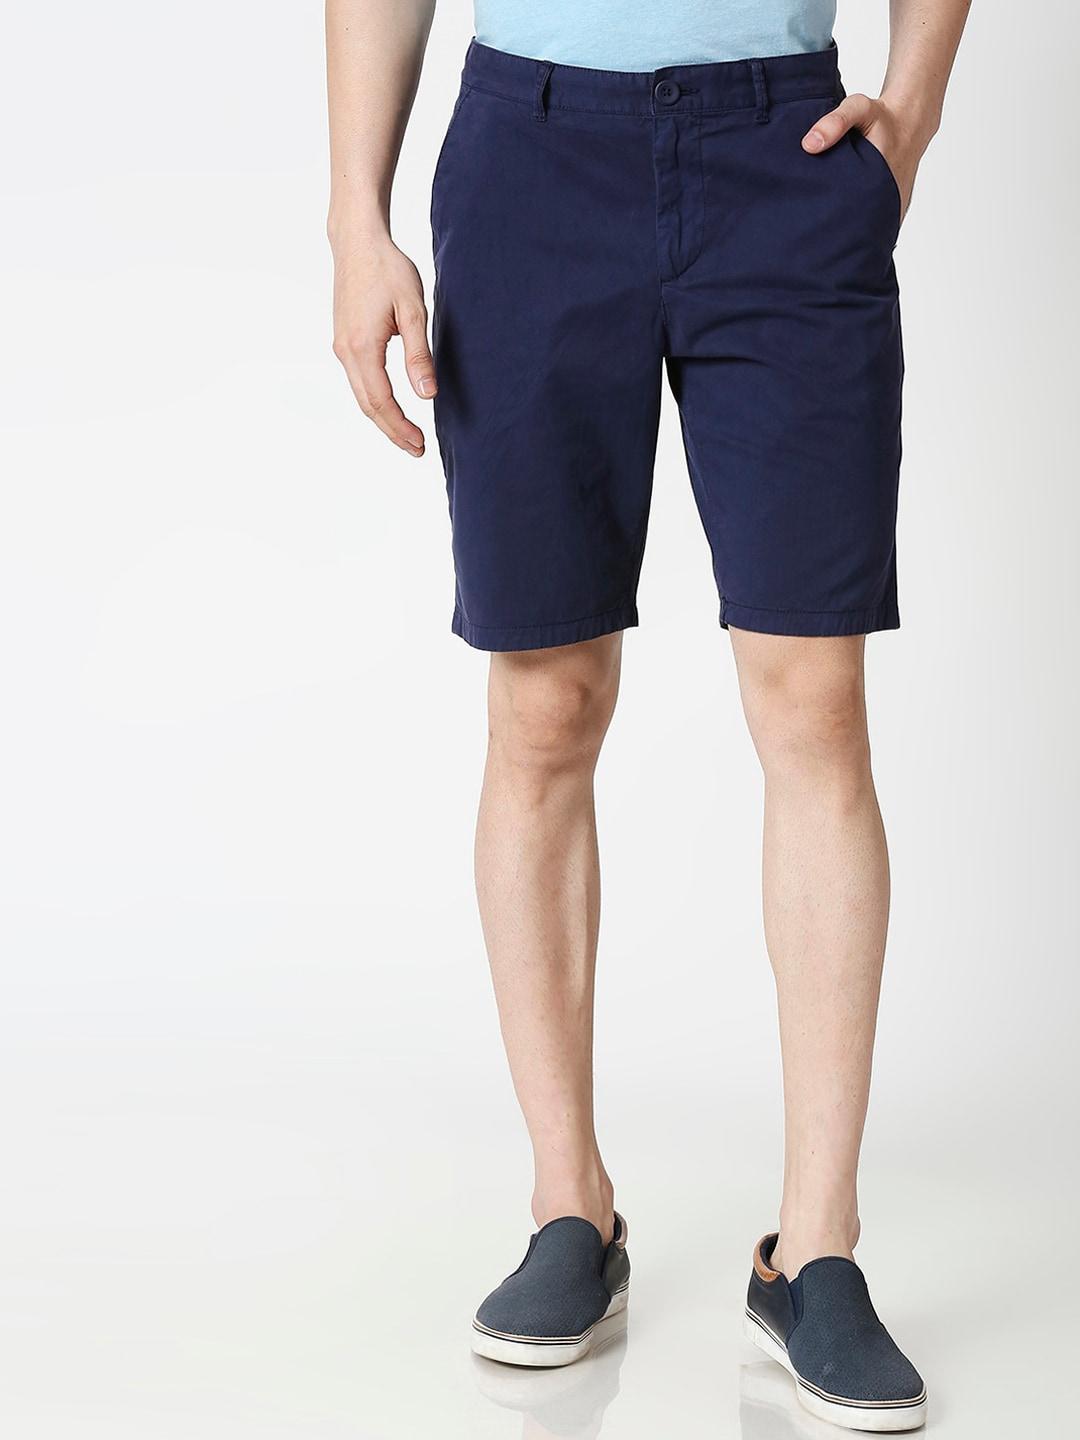 bewakoof-men-blue-mid-rise-chino-shorts